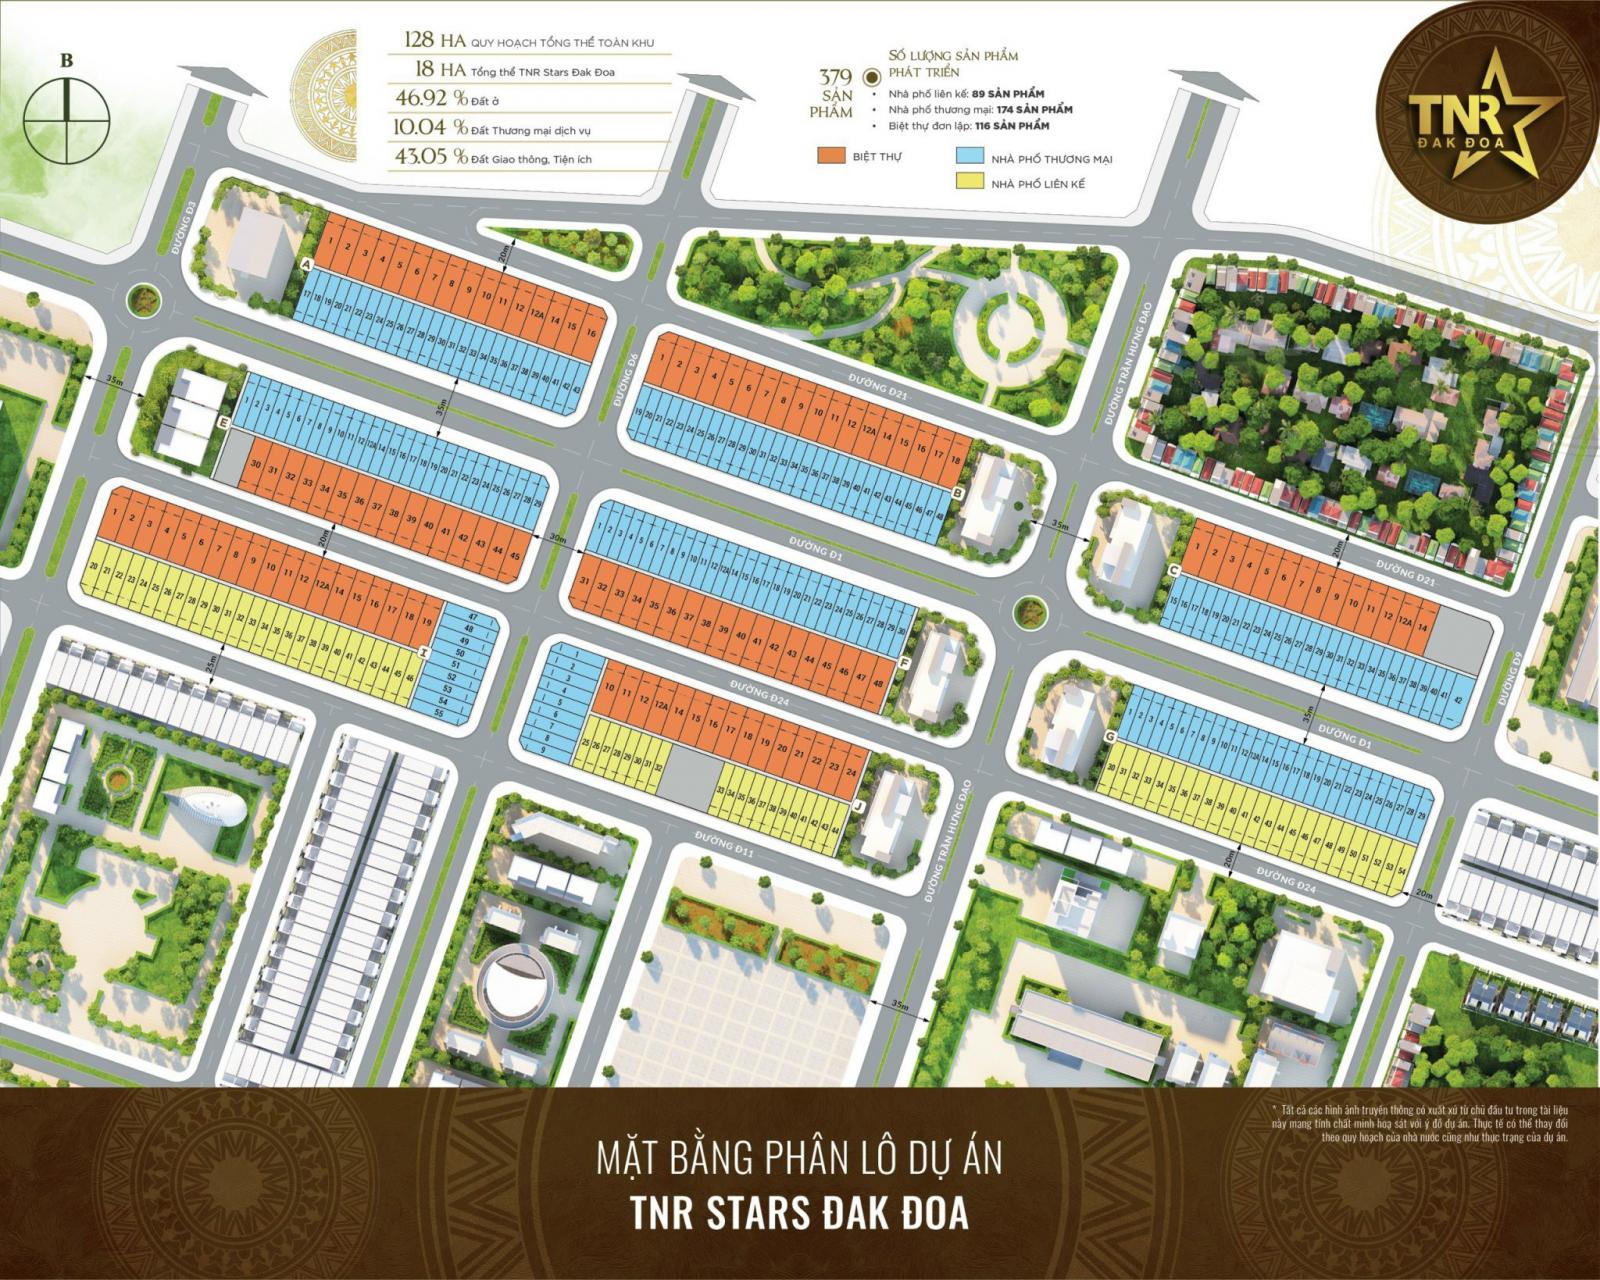 Đất nền Khu hành chính mới H.Đak Đoa, quy hoạch đồng bộ, sổ hồng riêng LH 0355 541 445 